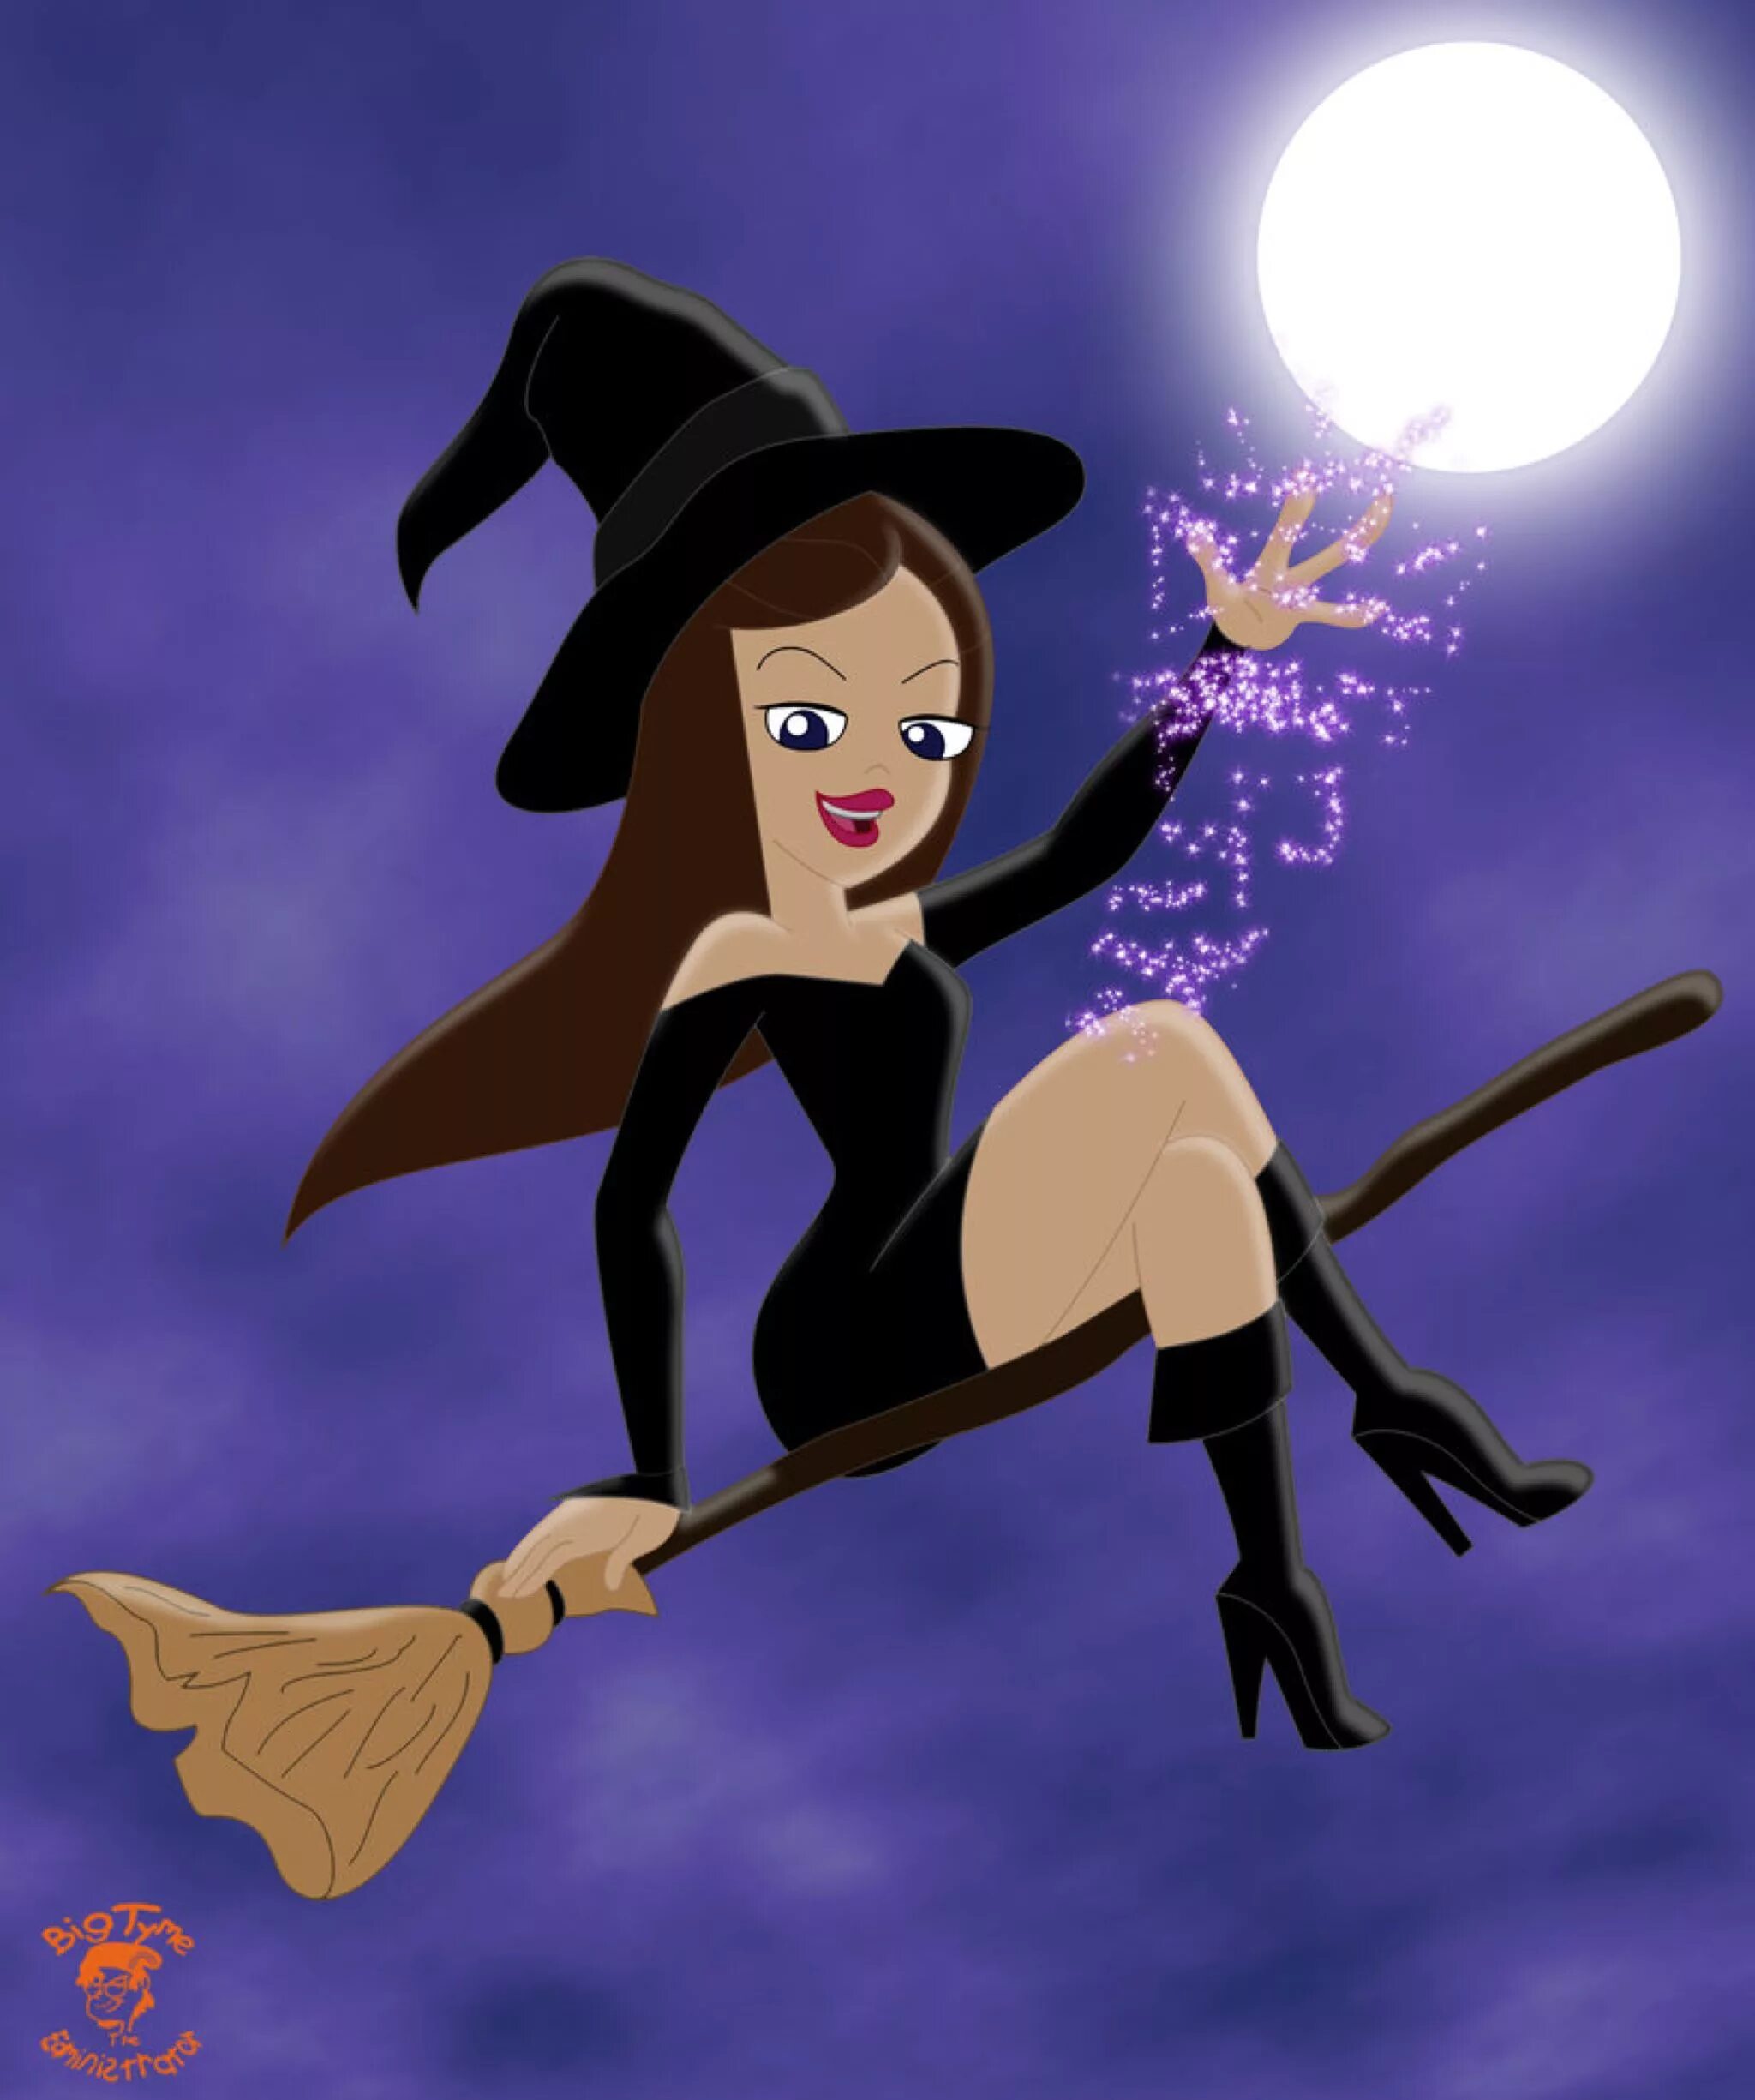 Имя маленькой ведьмы 7. Ванесса фуфелшмерц. Vanessa Doofenshmirtz. Disney: Witch ведьма. Цирцея Дисней ведьма.